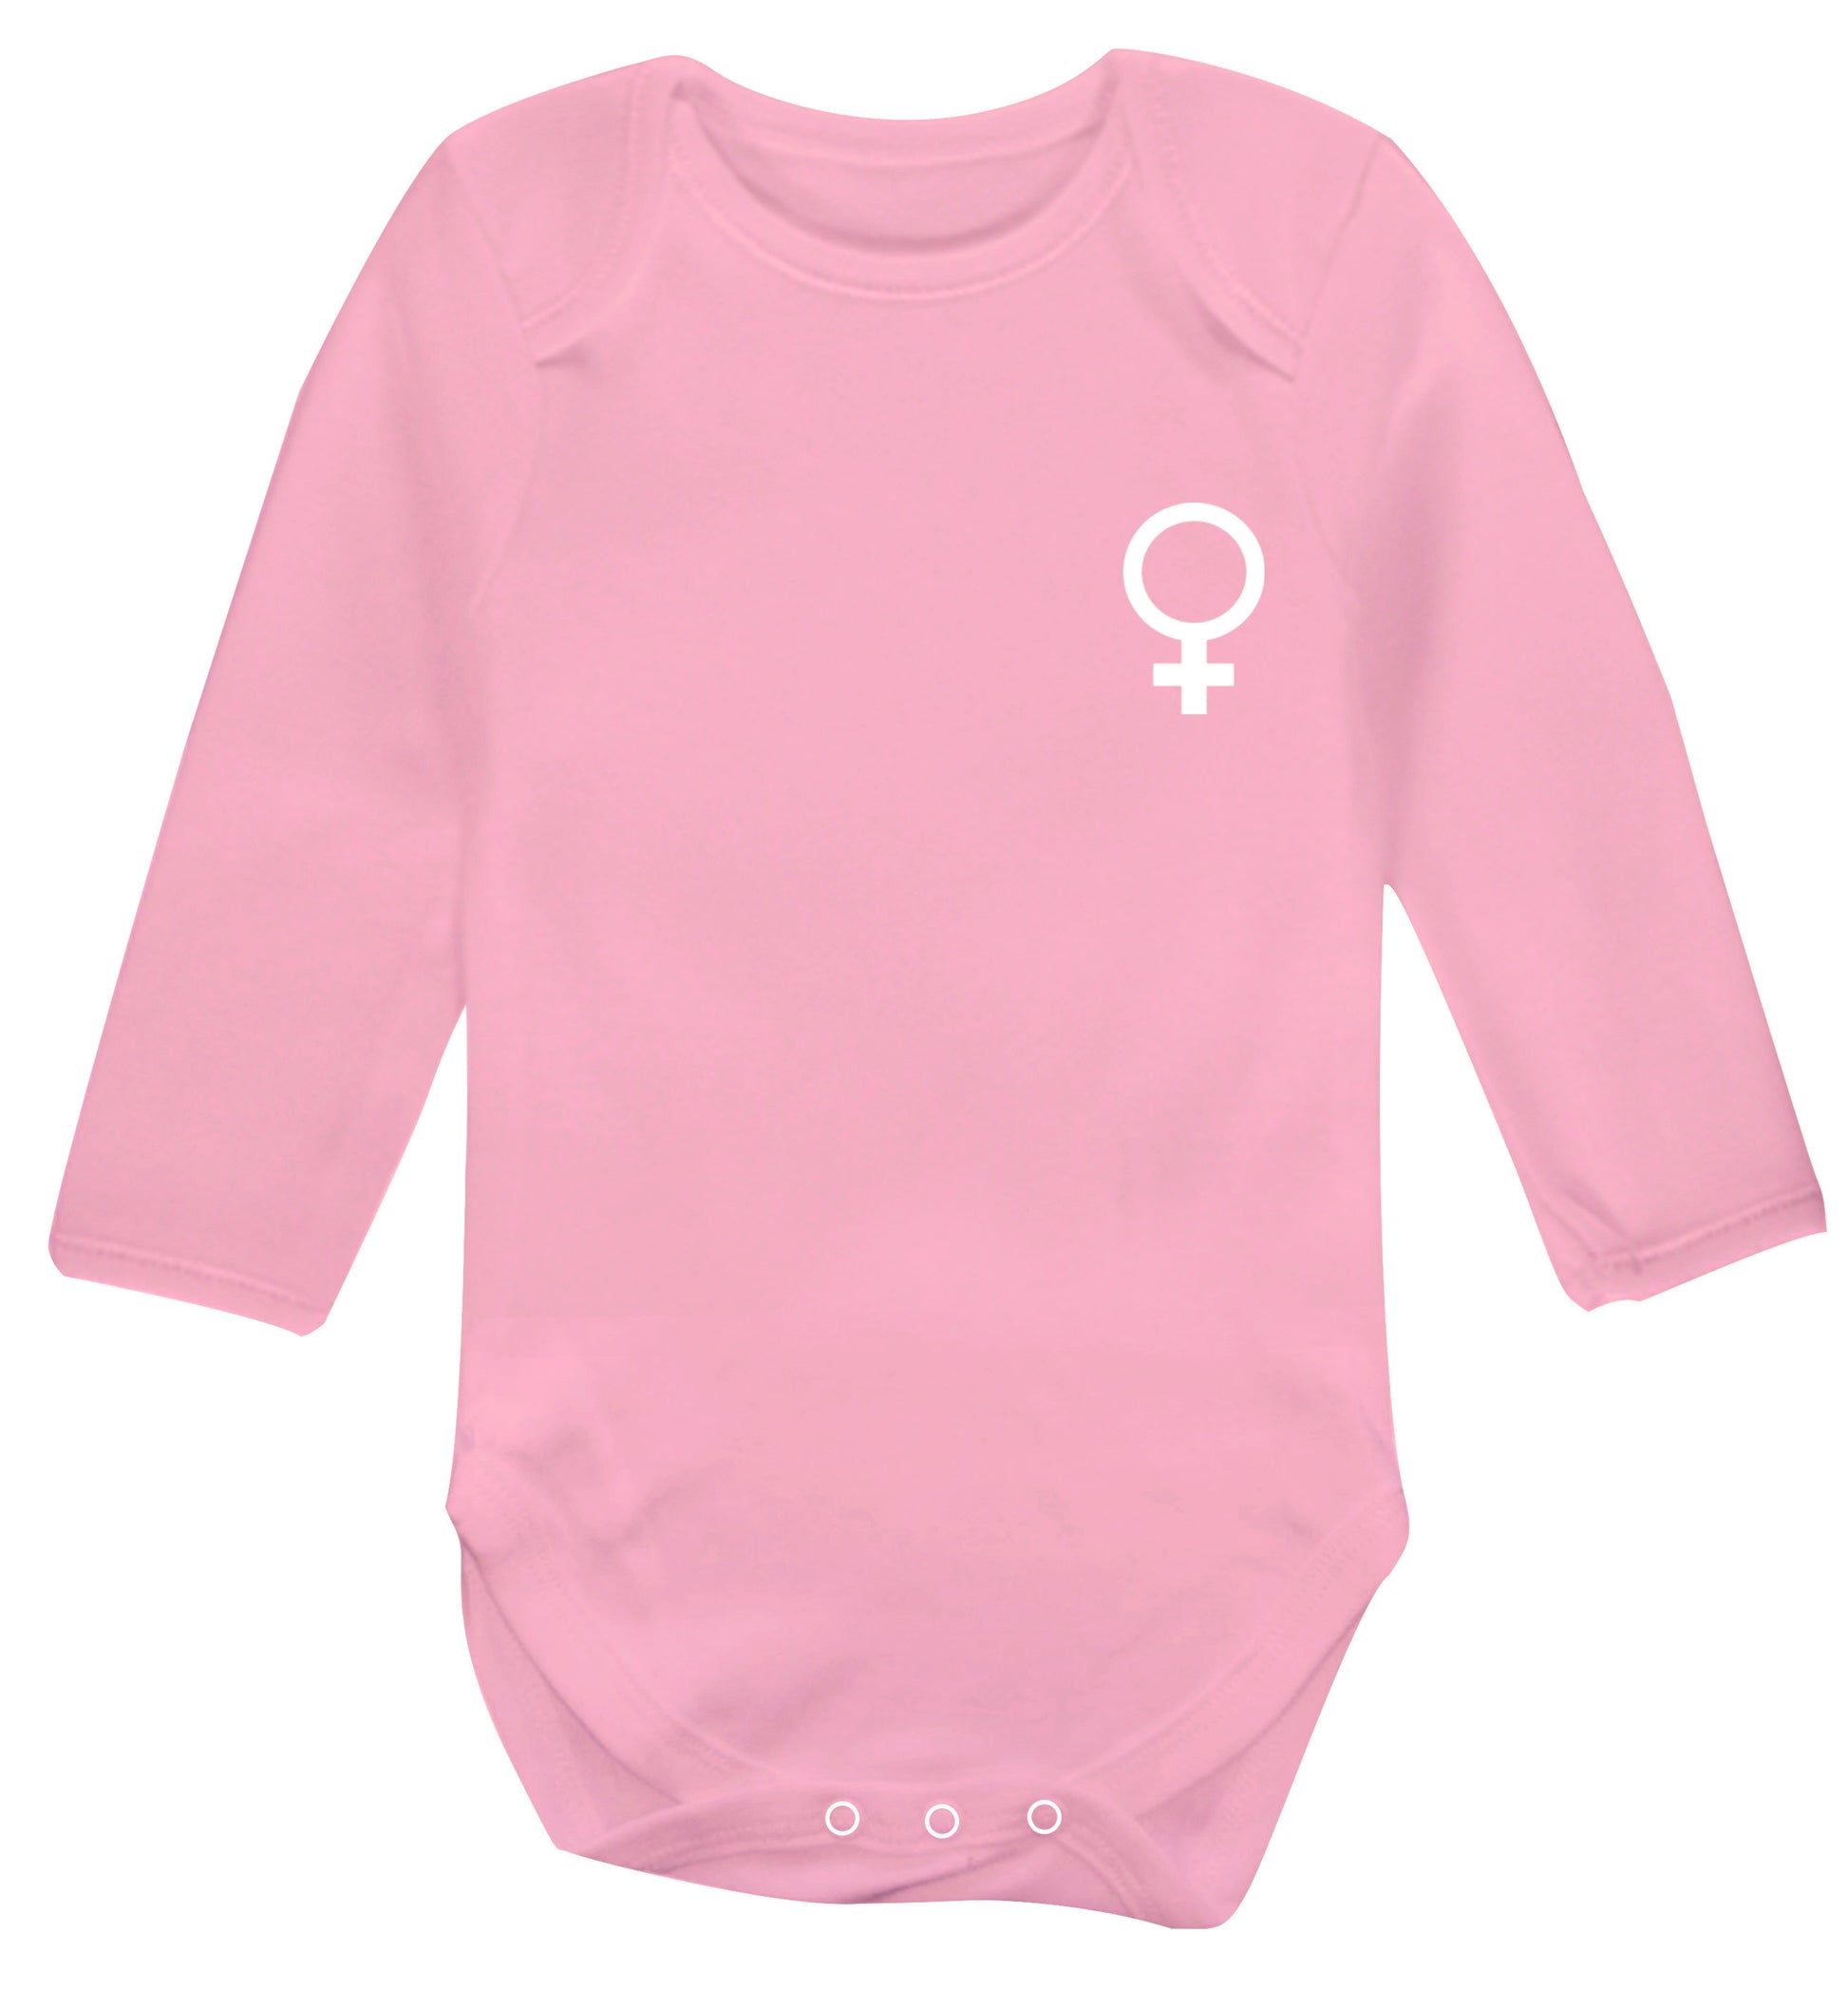 Female pocket symbol Baby Vest long sleeved pale pink 6-12 months